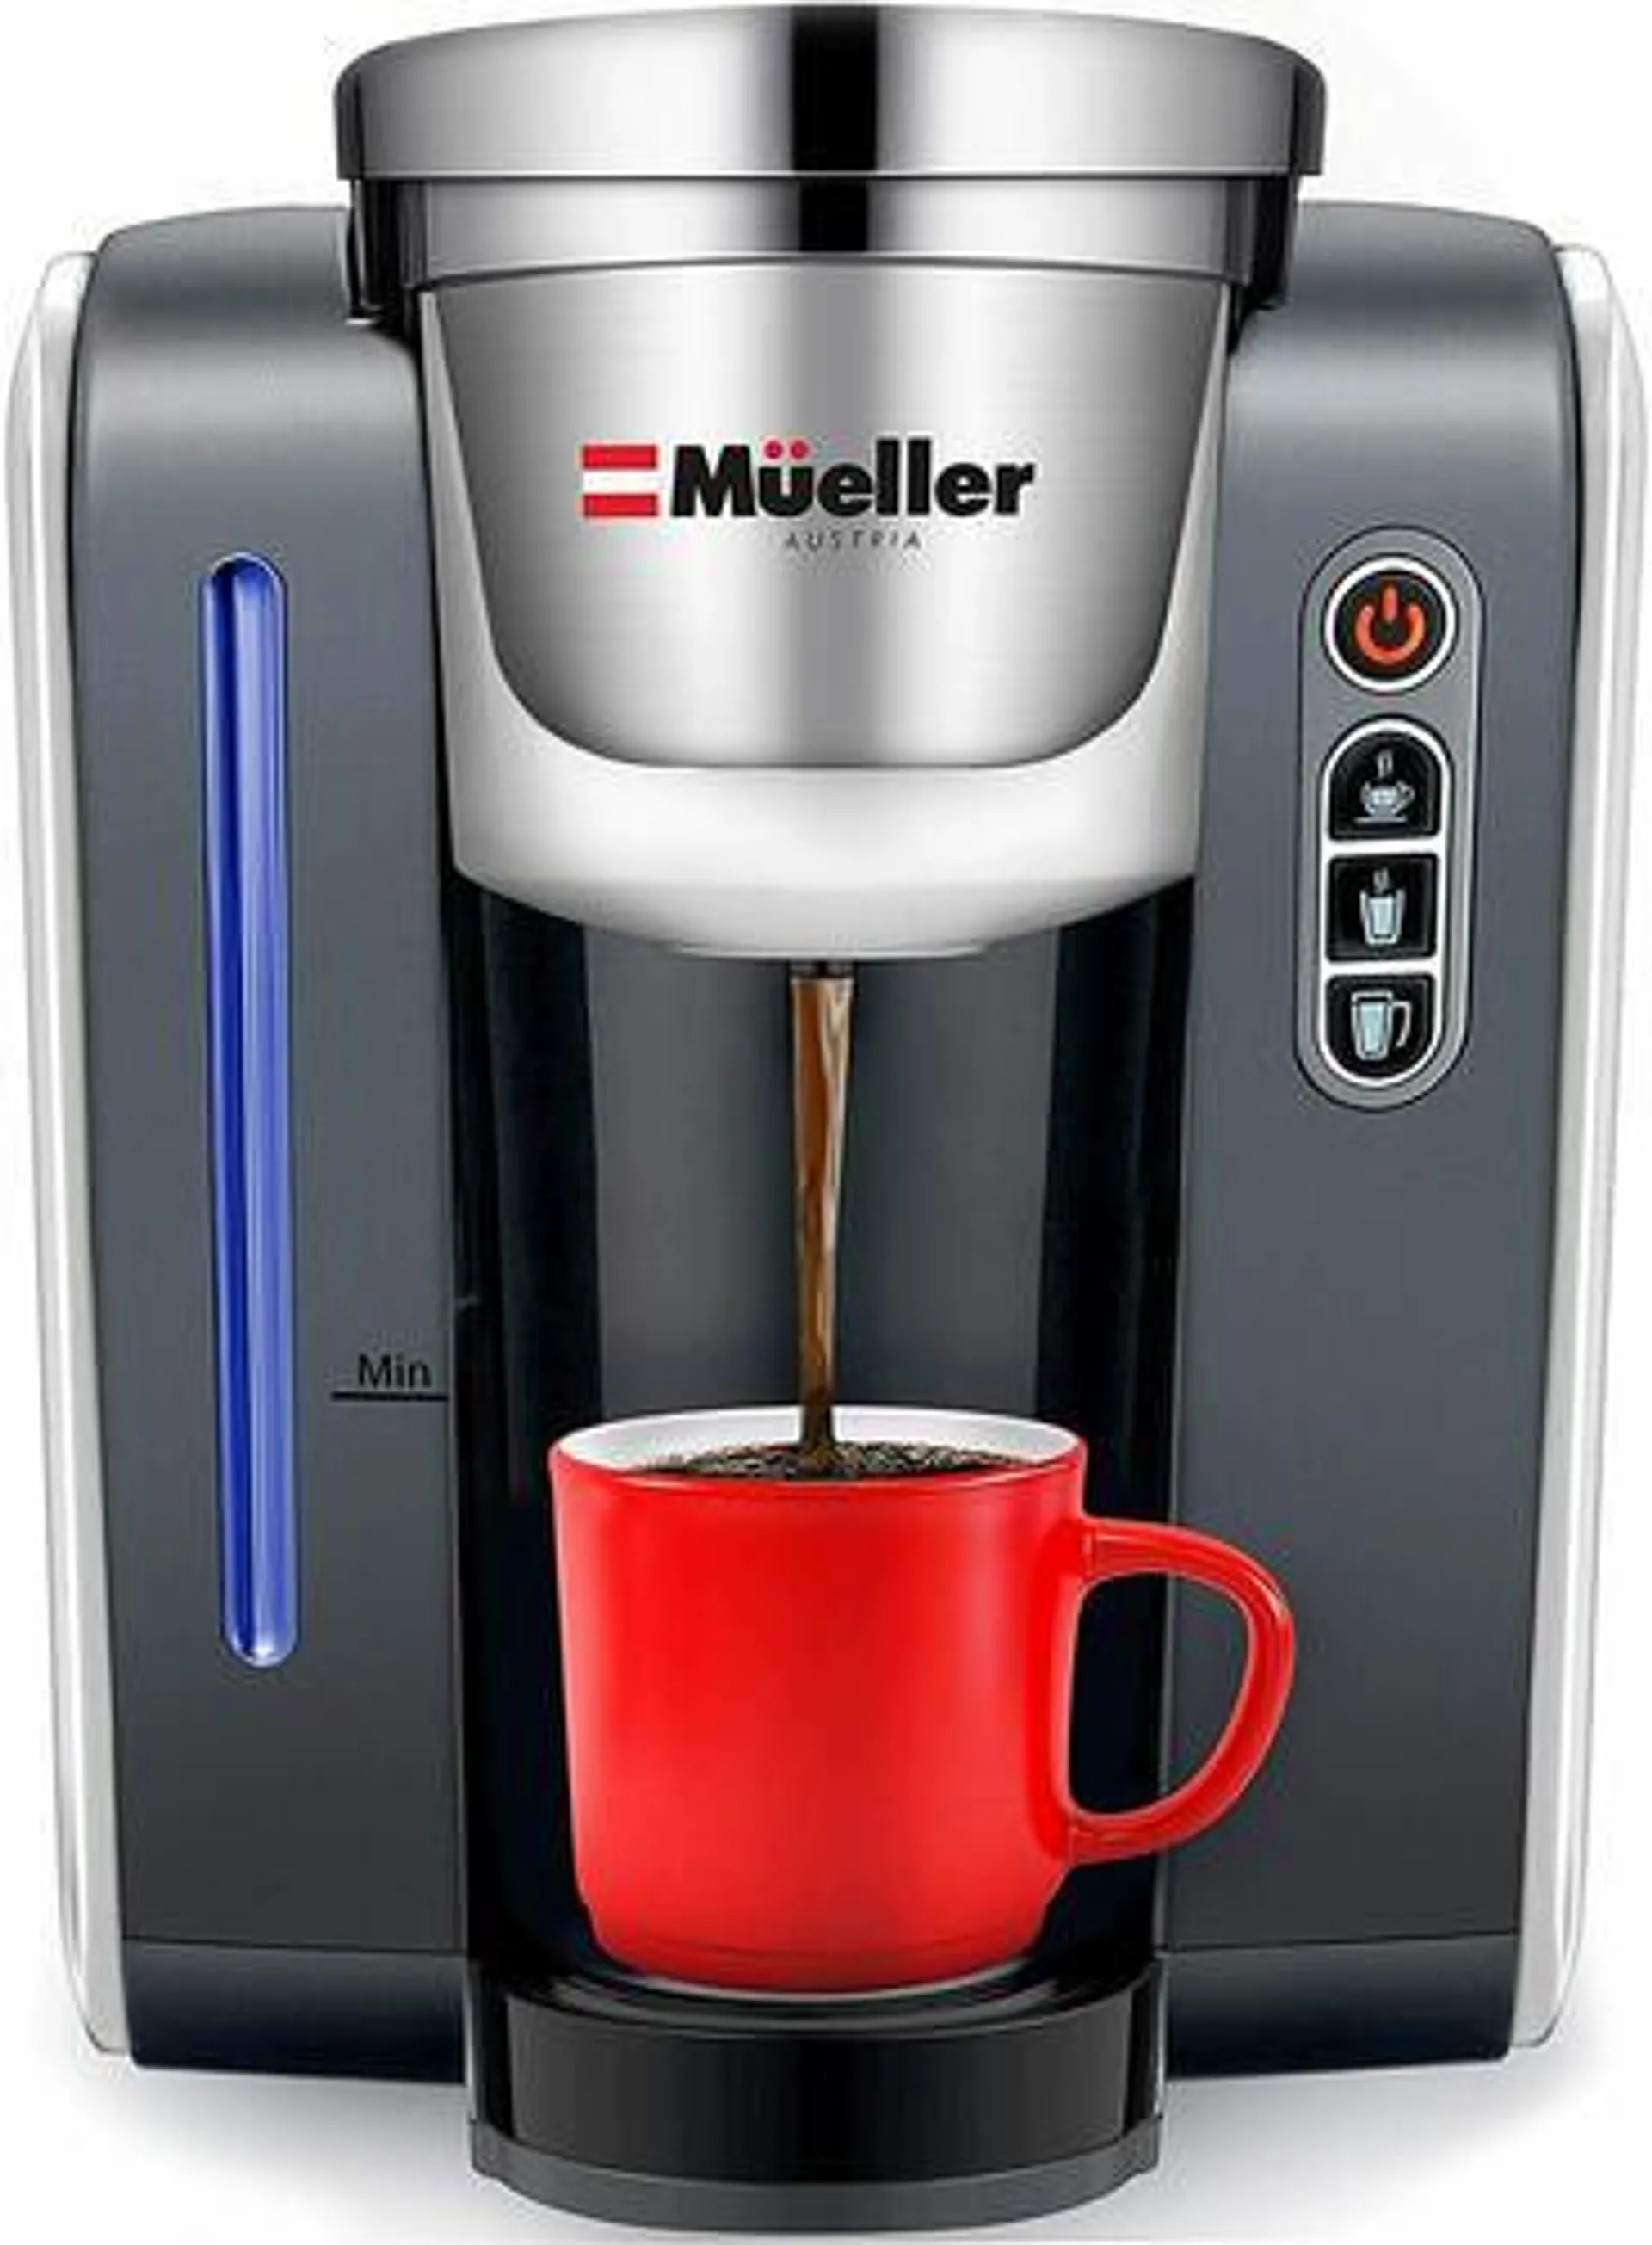 Mueller® Single Serve Coffee Maker